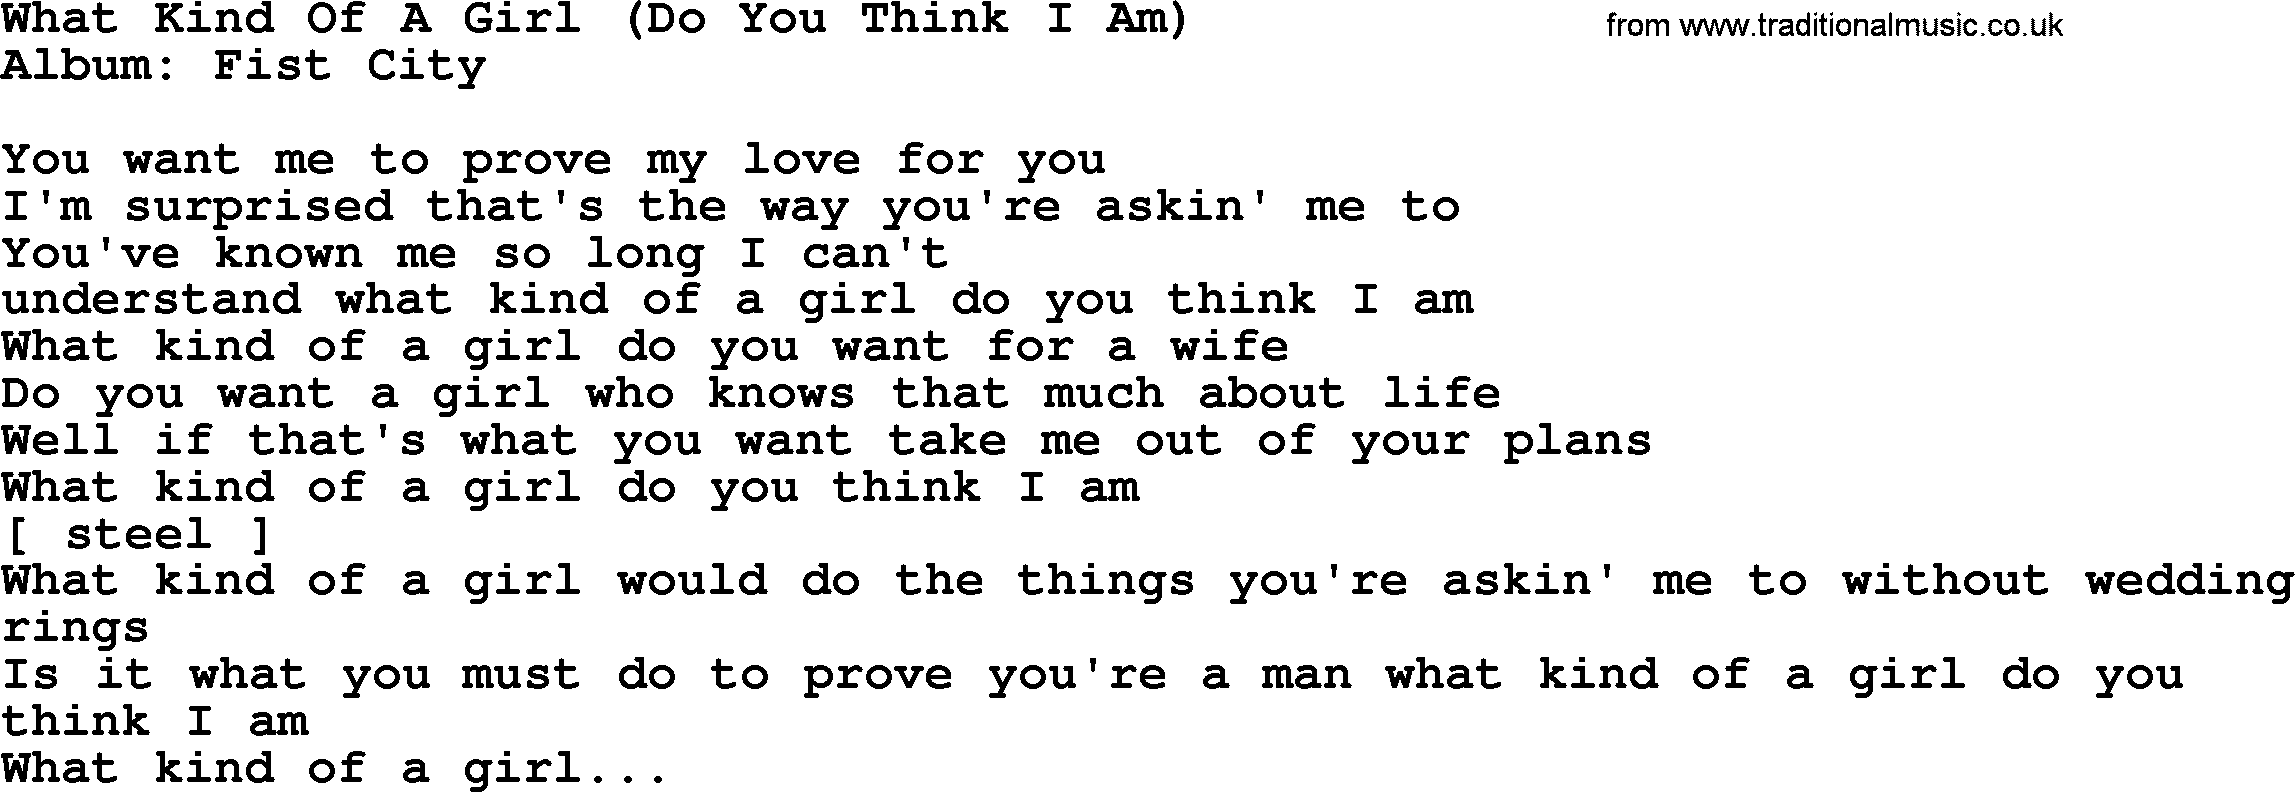 Loretta Lynn song: What Kind Of A Girl (Do You Think I Am) lyrics